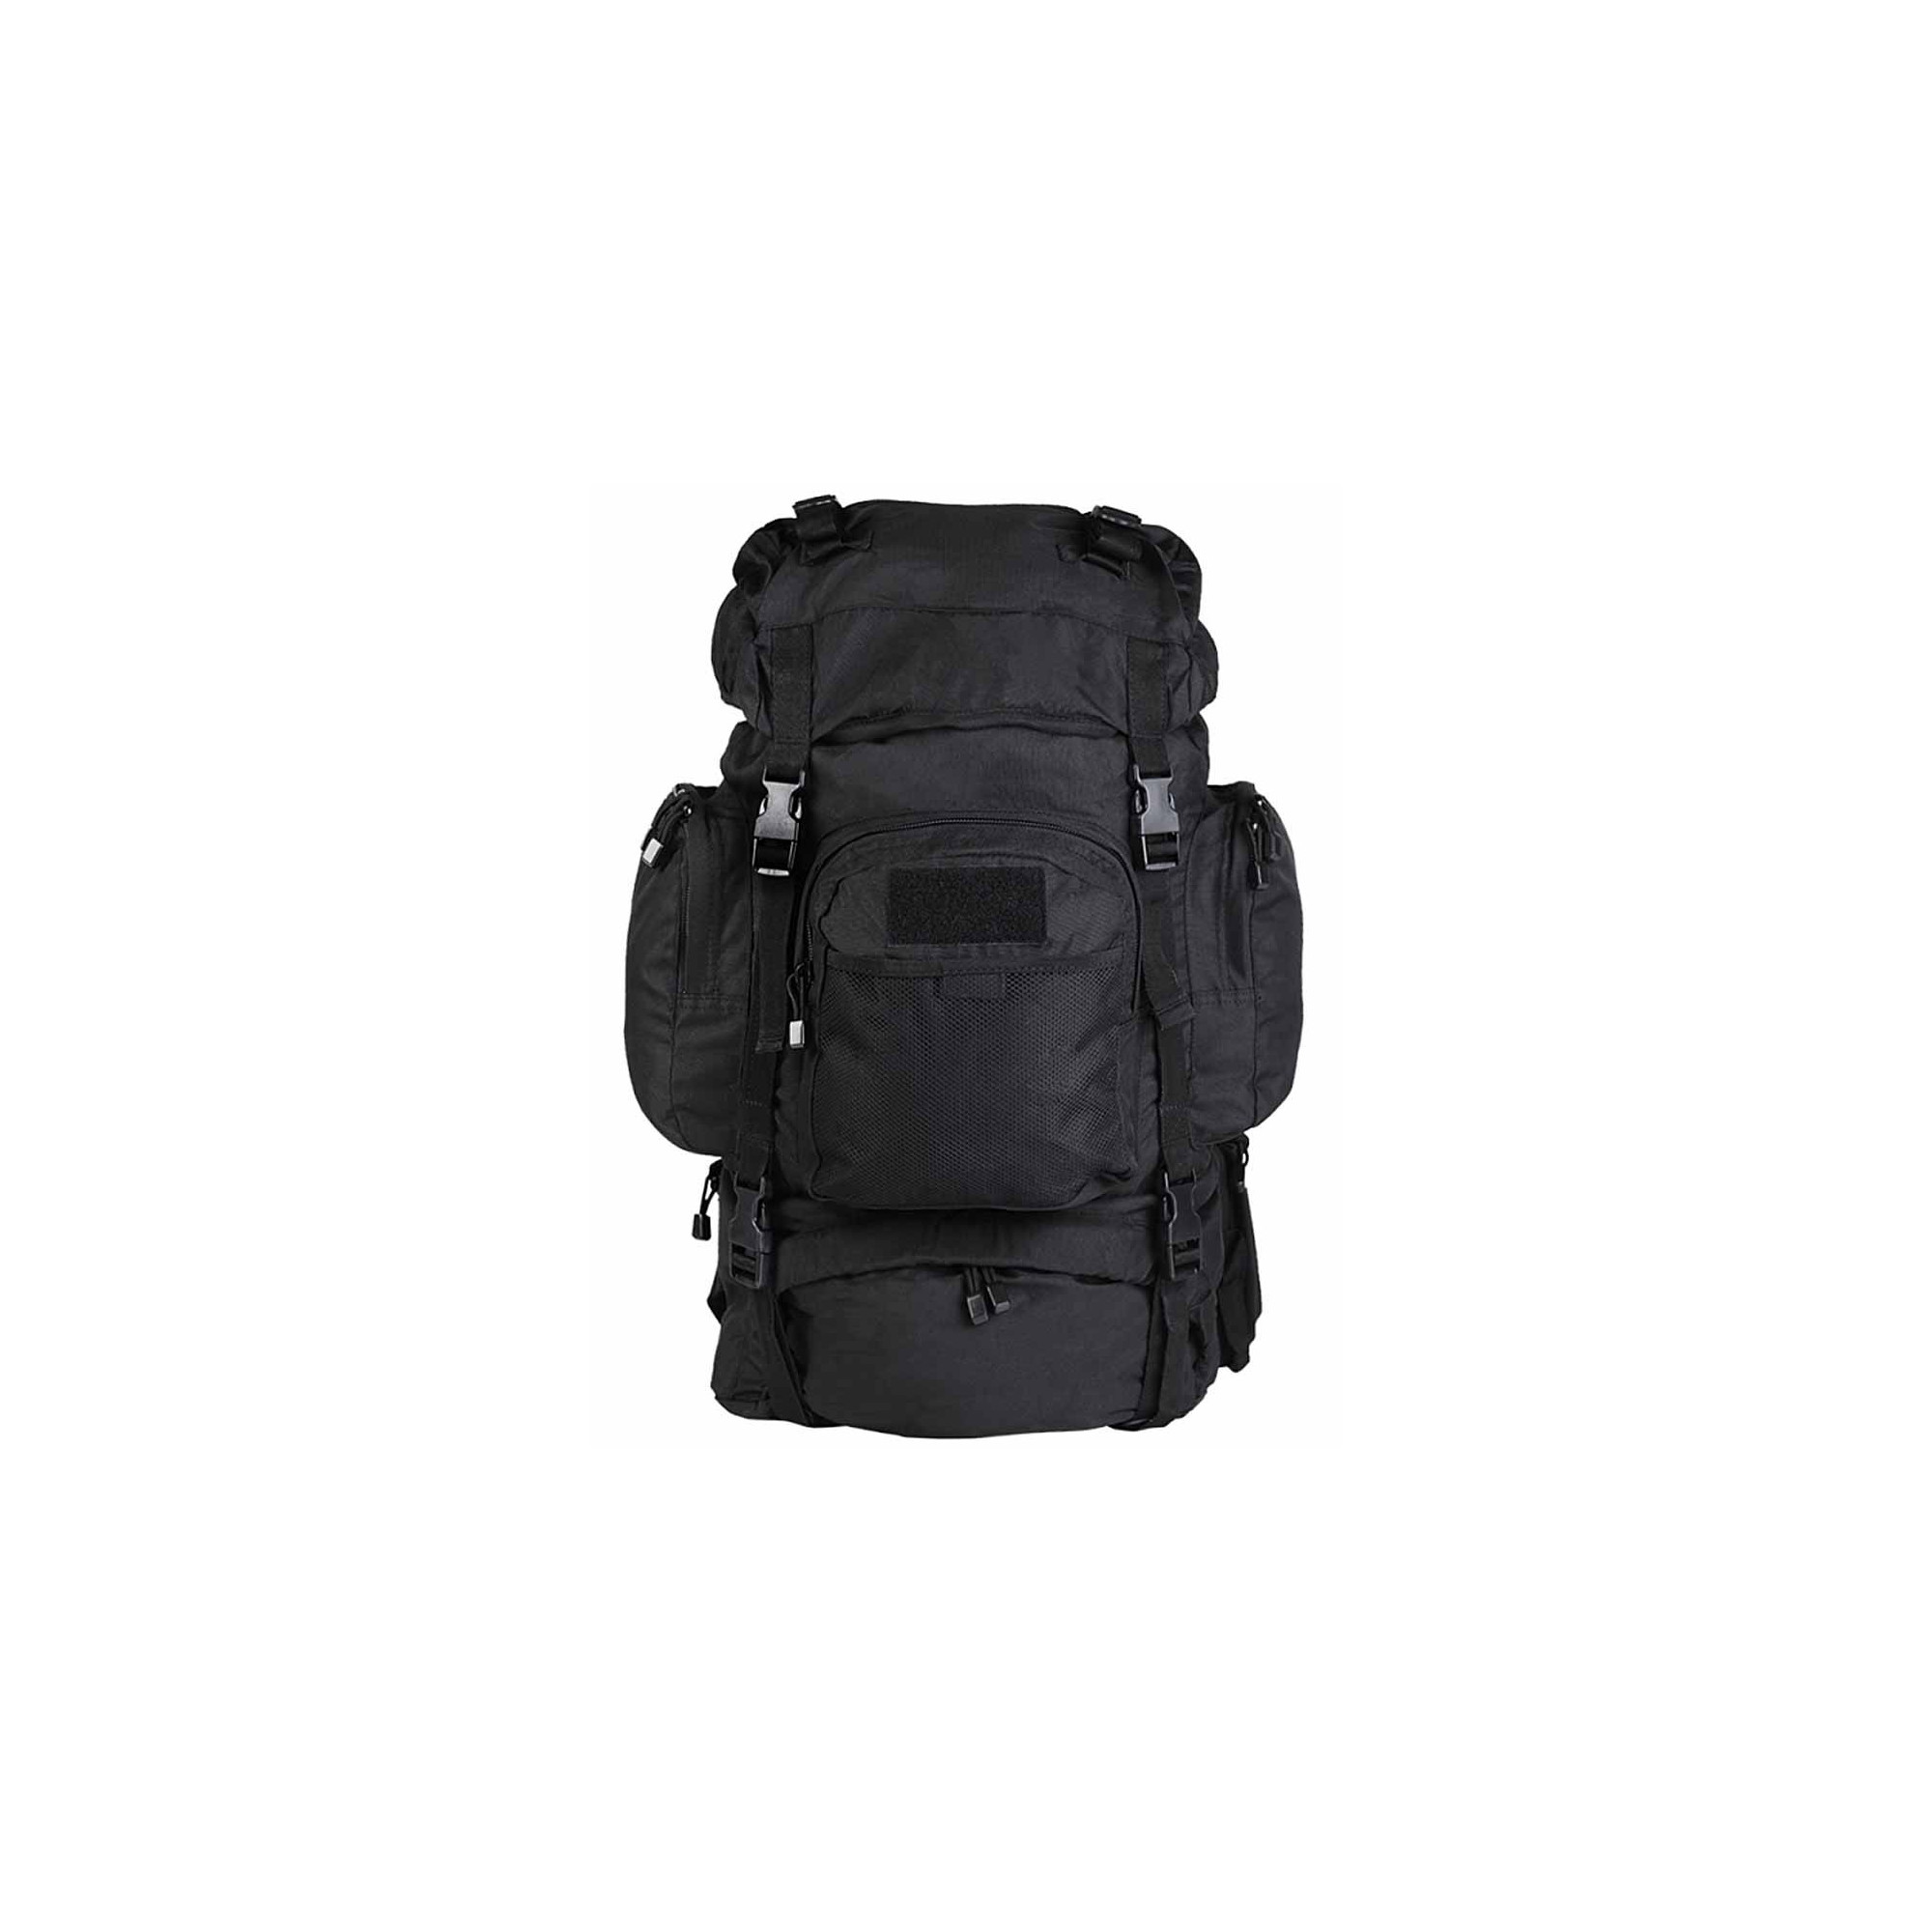 Miltec Commando 55 L backpack 4046872175282